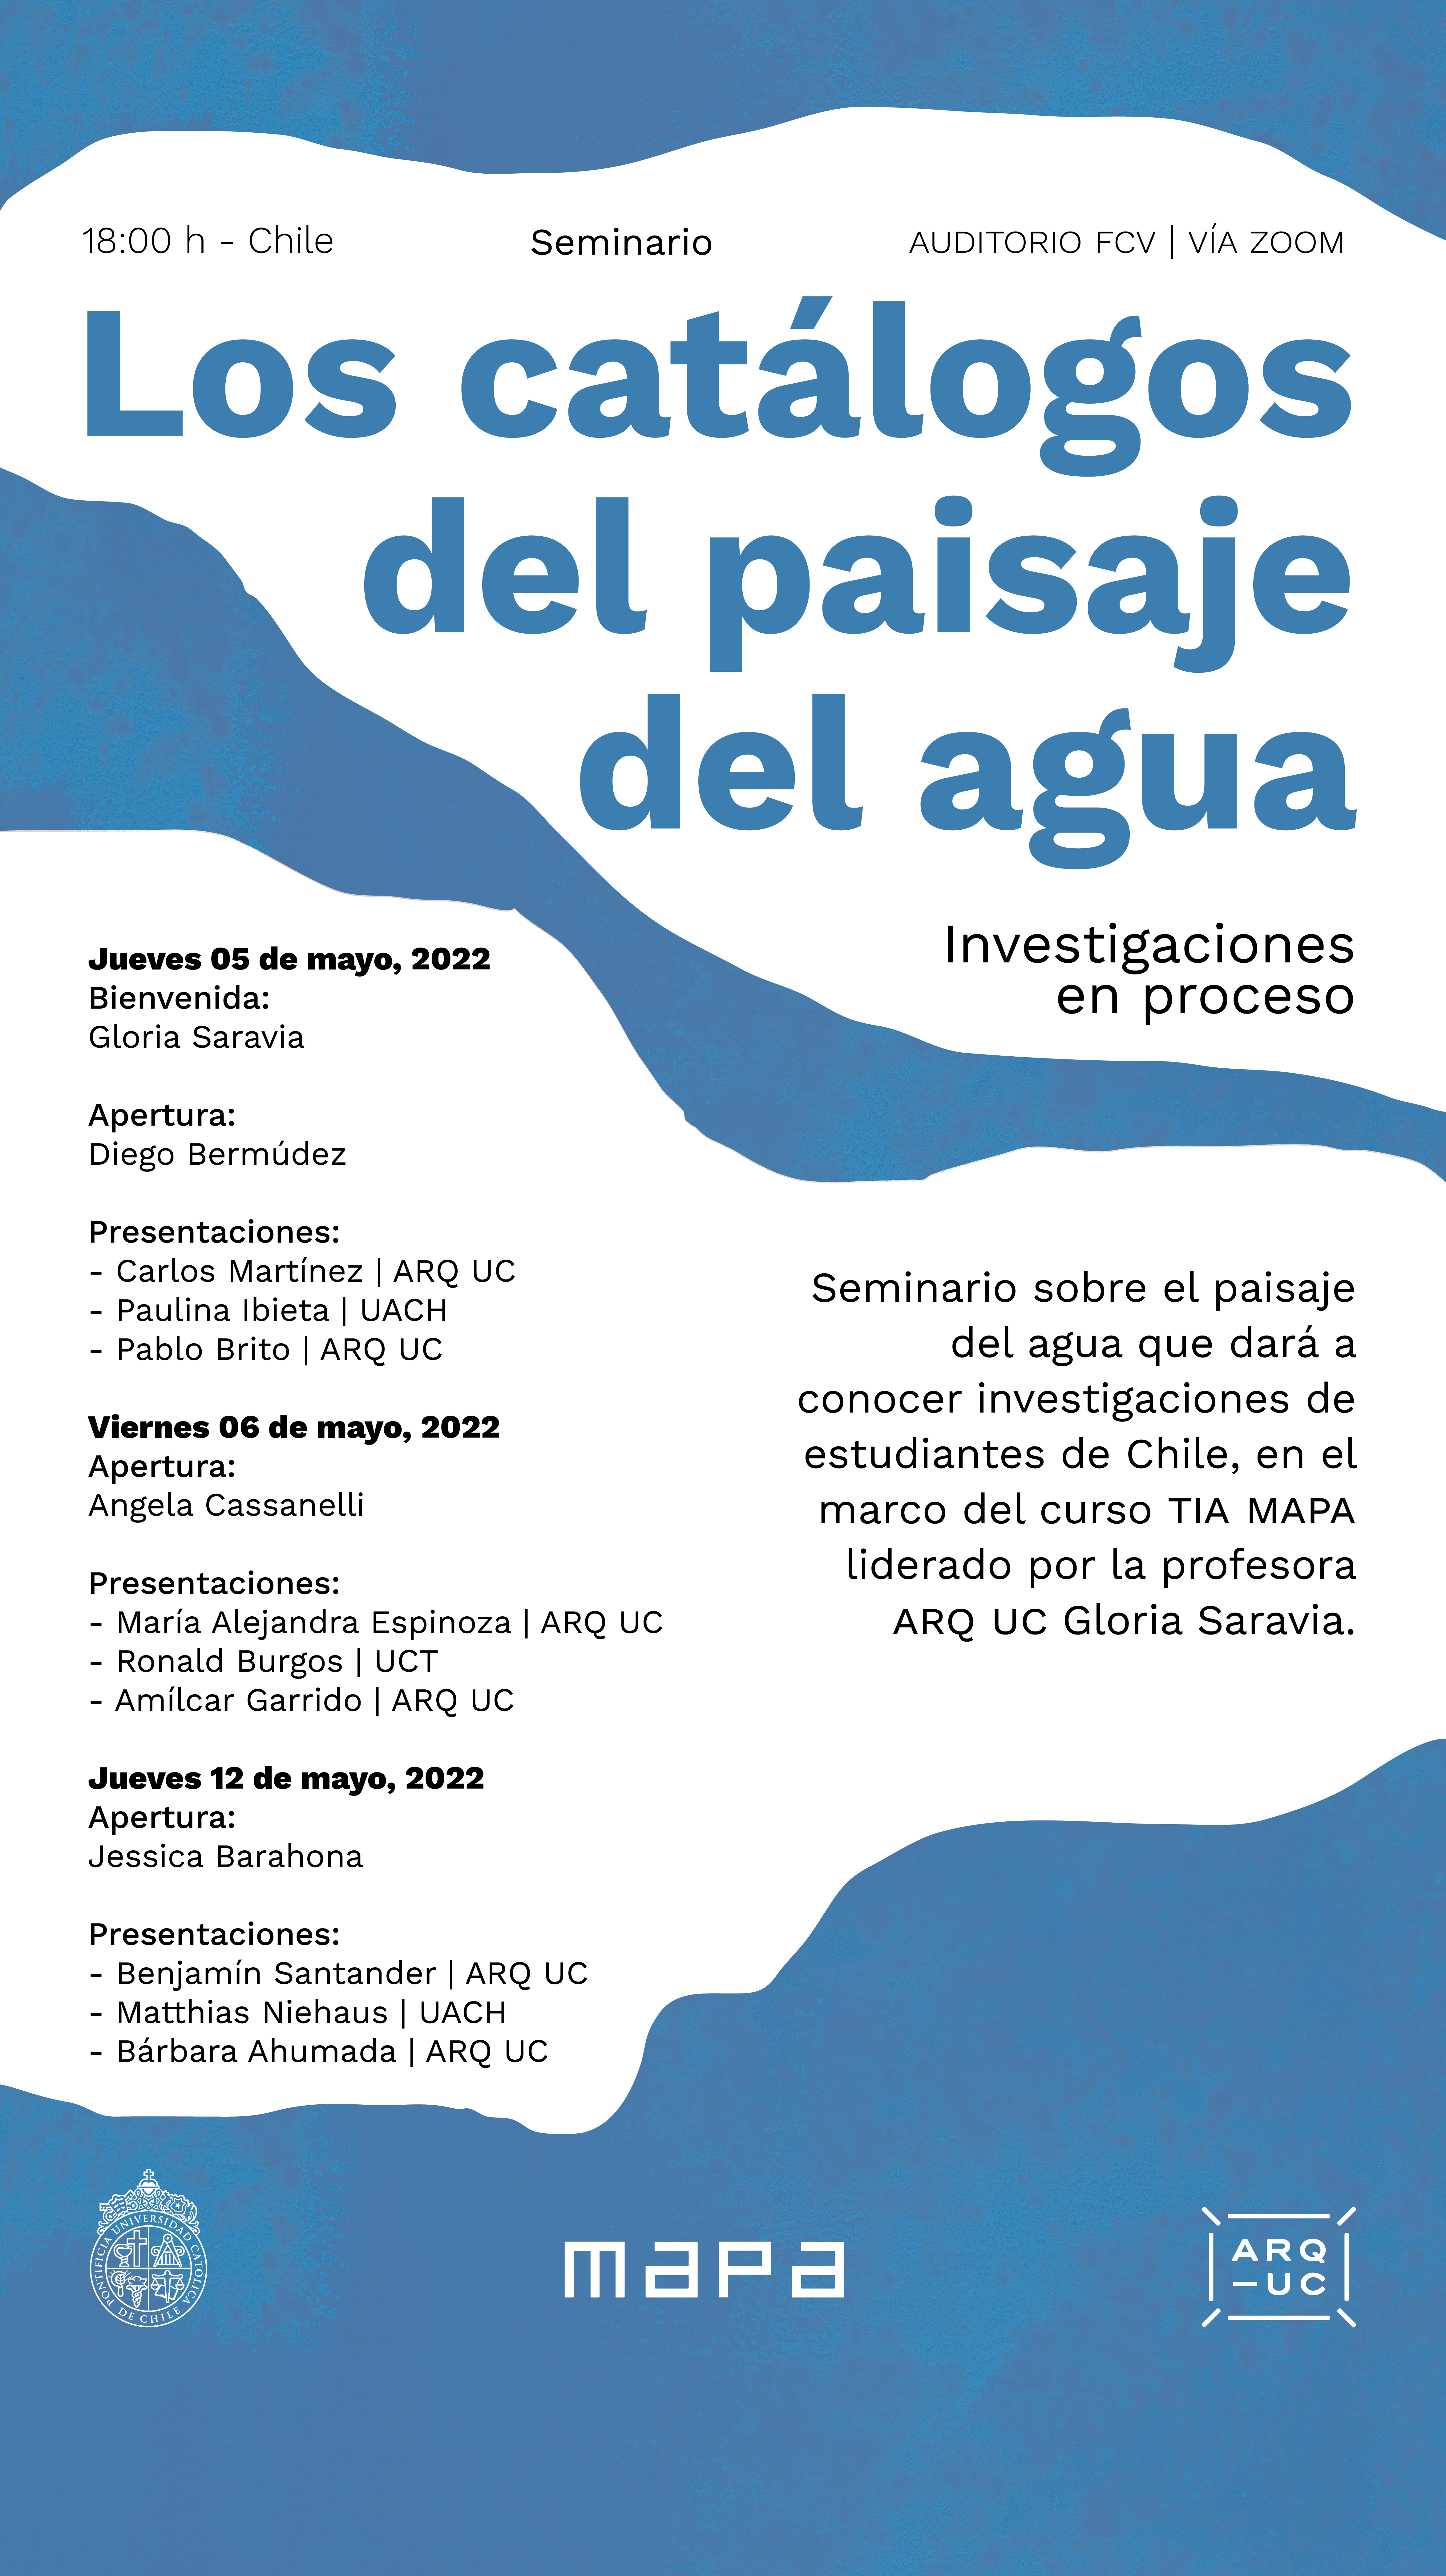 2022-04-26_AFICHE_Afiche_seminario_Los_catálogos_del_paisaje_del_agua.png